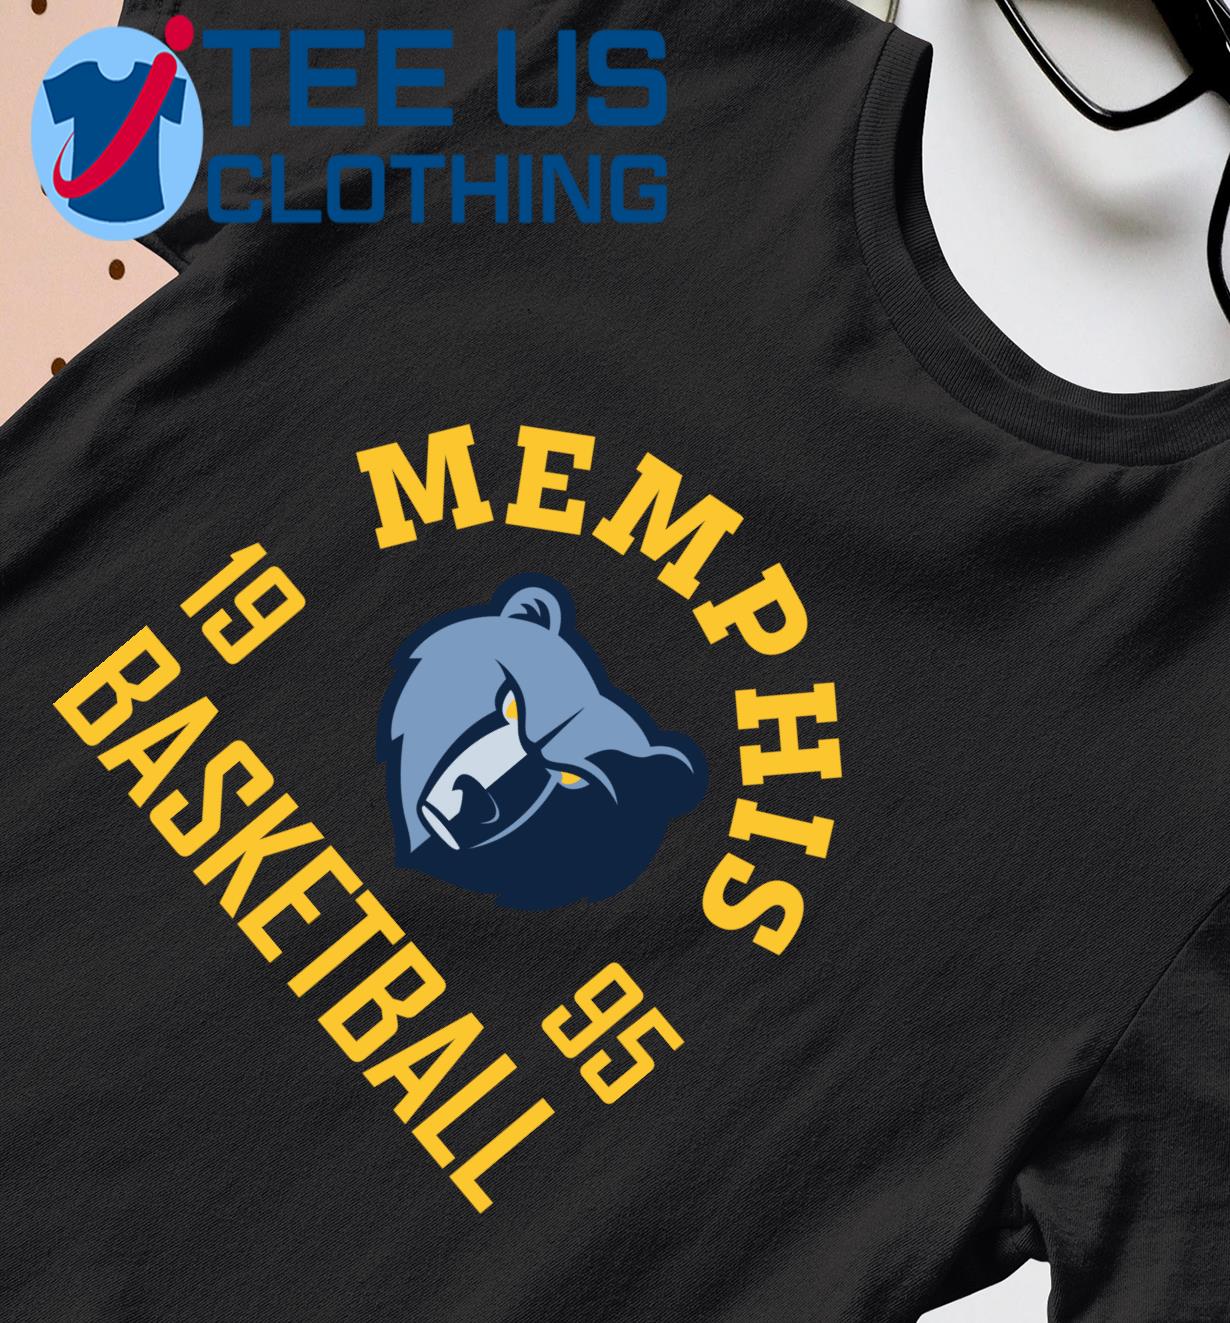 Memphis Grizzlies Basketball 1995 shirt